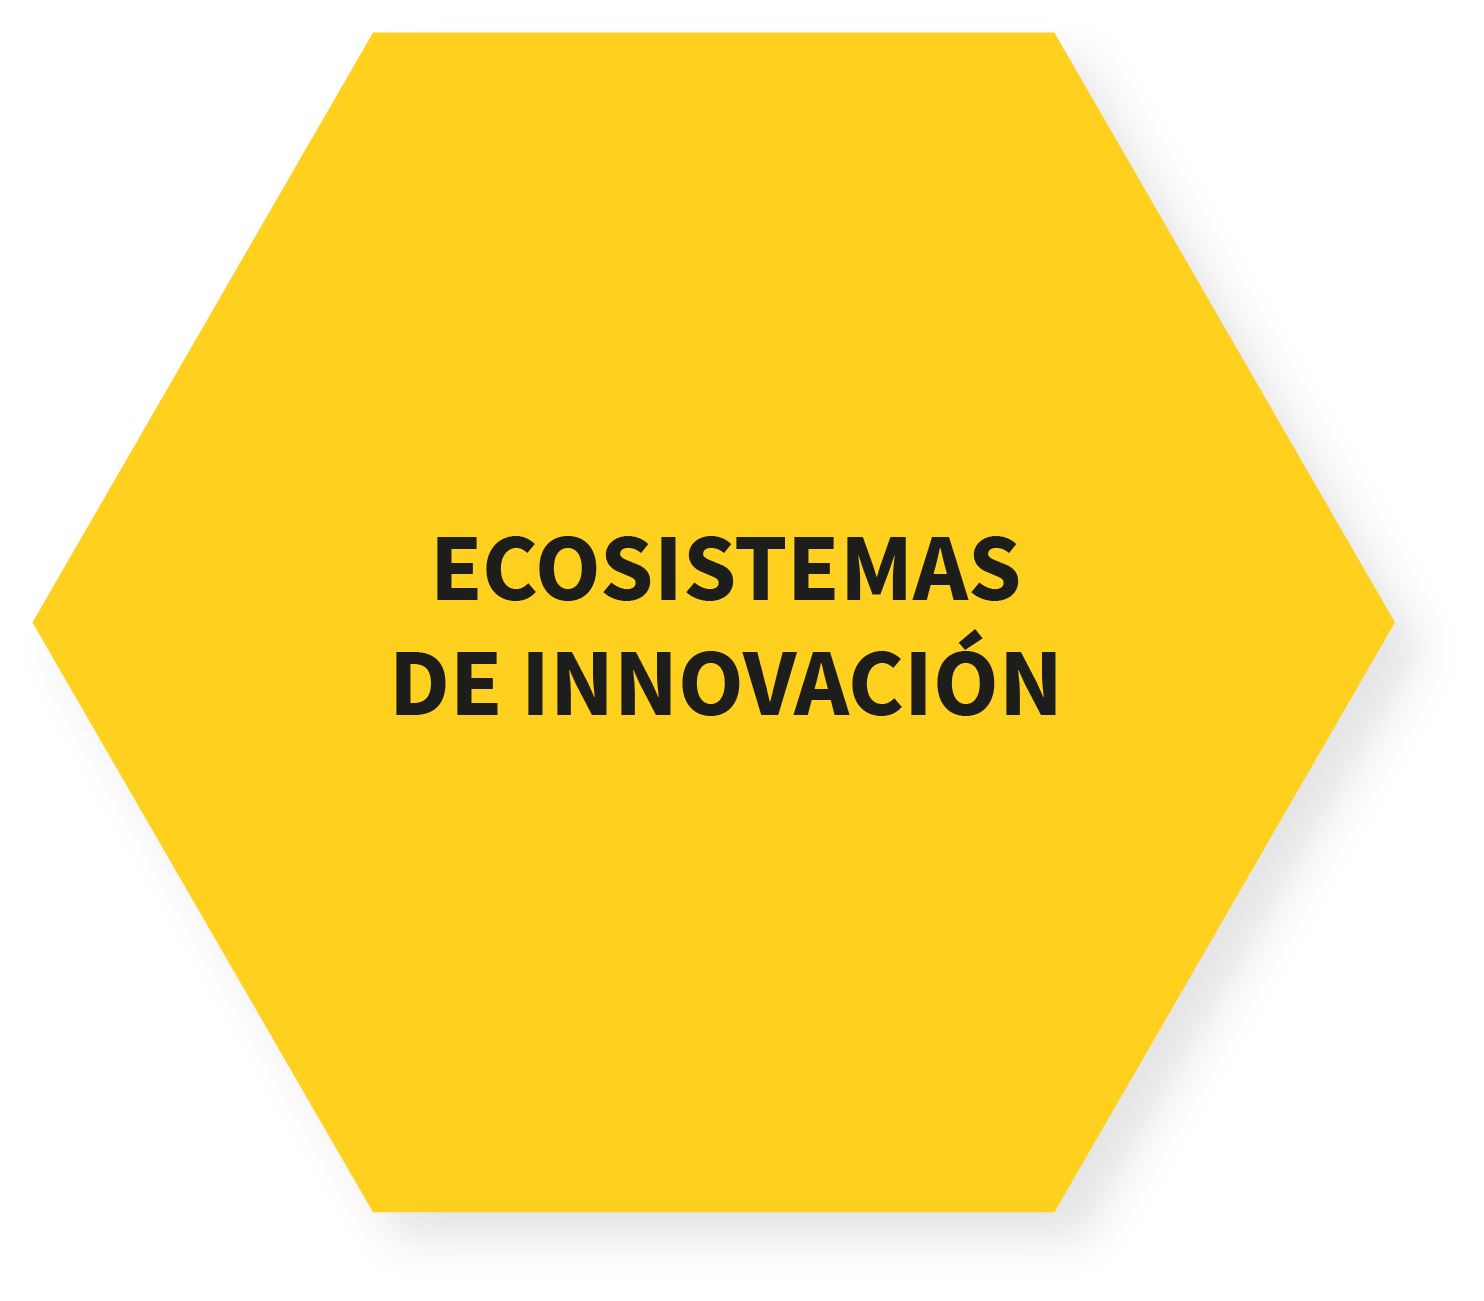 Ecosistemas de innovación